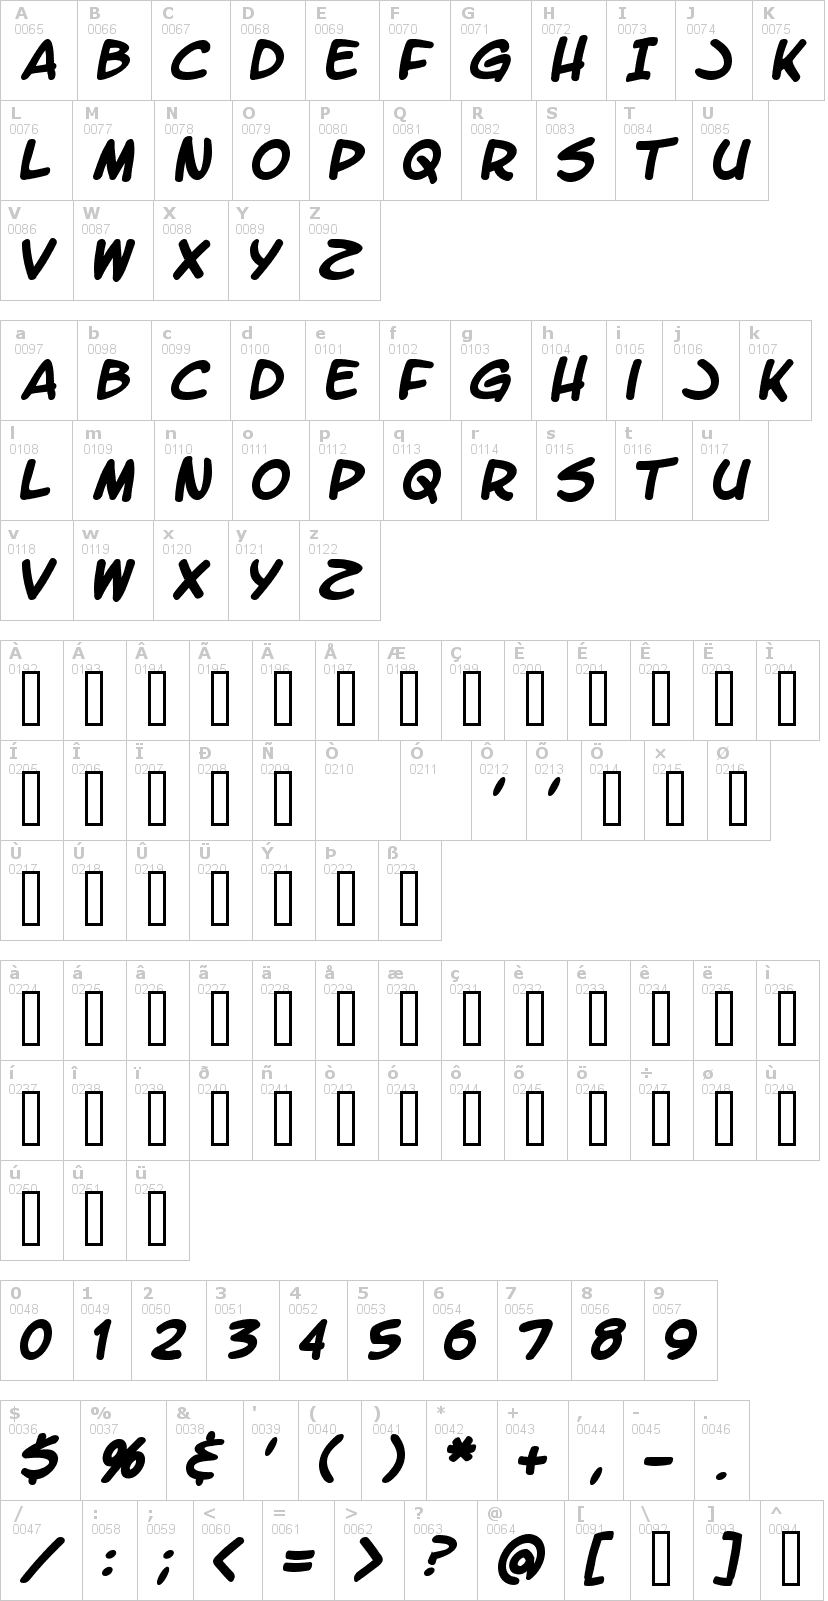 Lettere dell'alfabeto del font letter-o-matic con le quali è possibile realizzare adesivi prespaziati